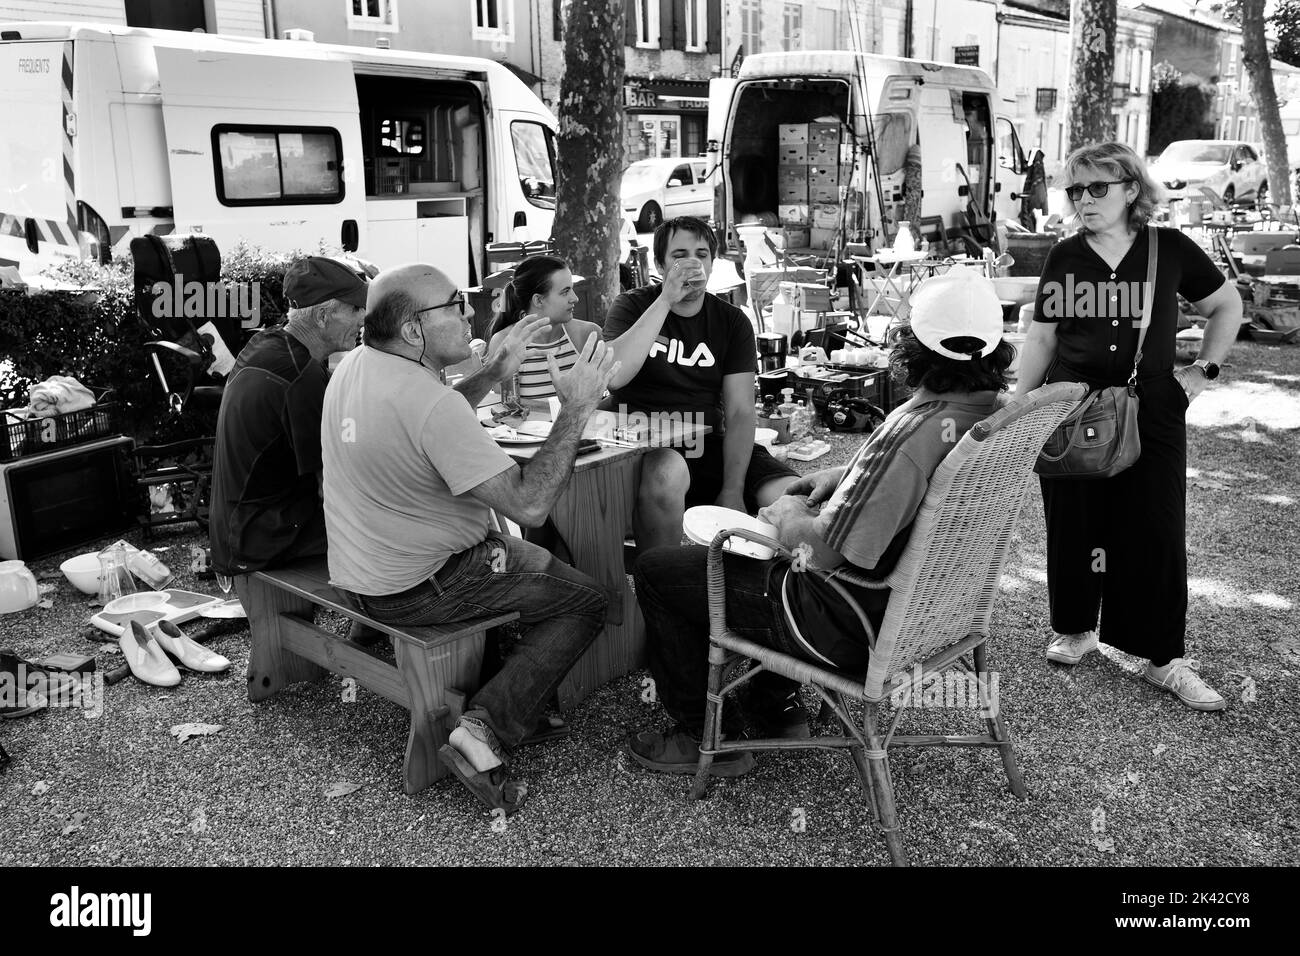 Les détenteurs de stalle du marché français ayant un déjeuner pique-nique au marché du dimanche à Lavardac dans le département du Lot-et-Garonne, dans le sud-ouest de la France Banque D'Images